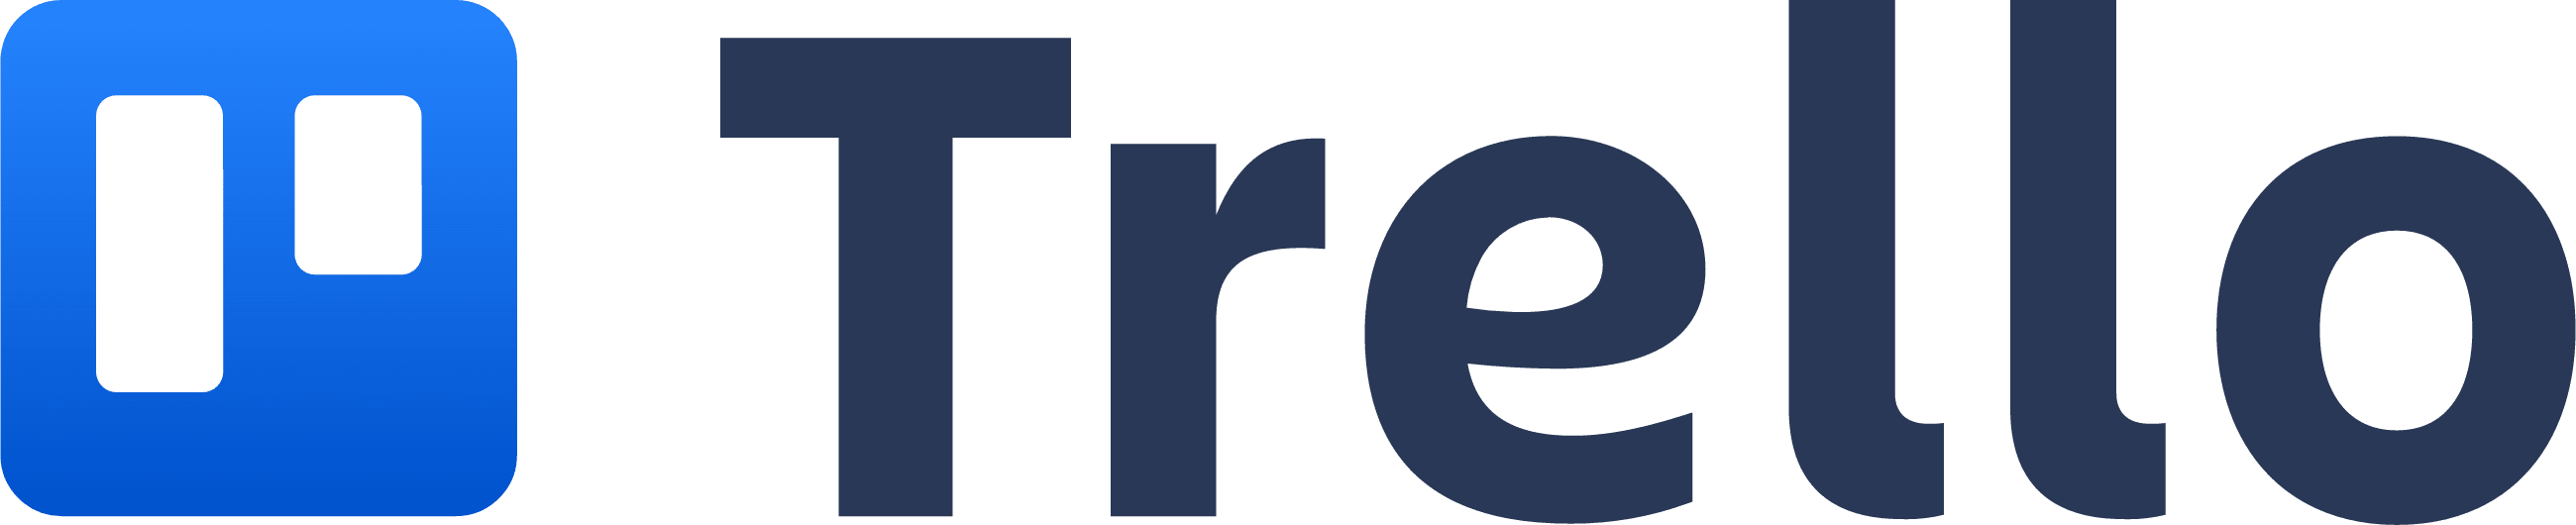 Logotipo Trello, que lembra um quadro do Trello com duas colunas.